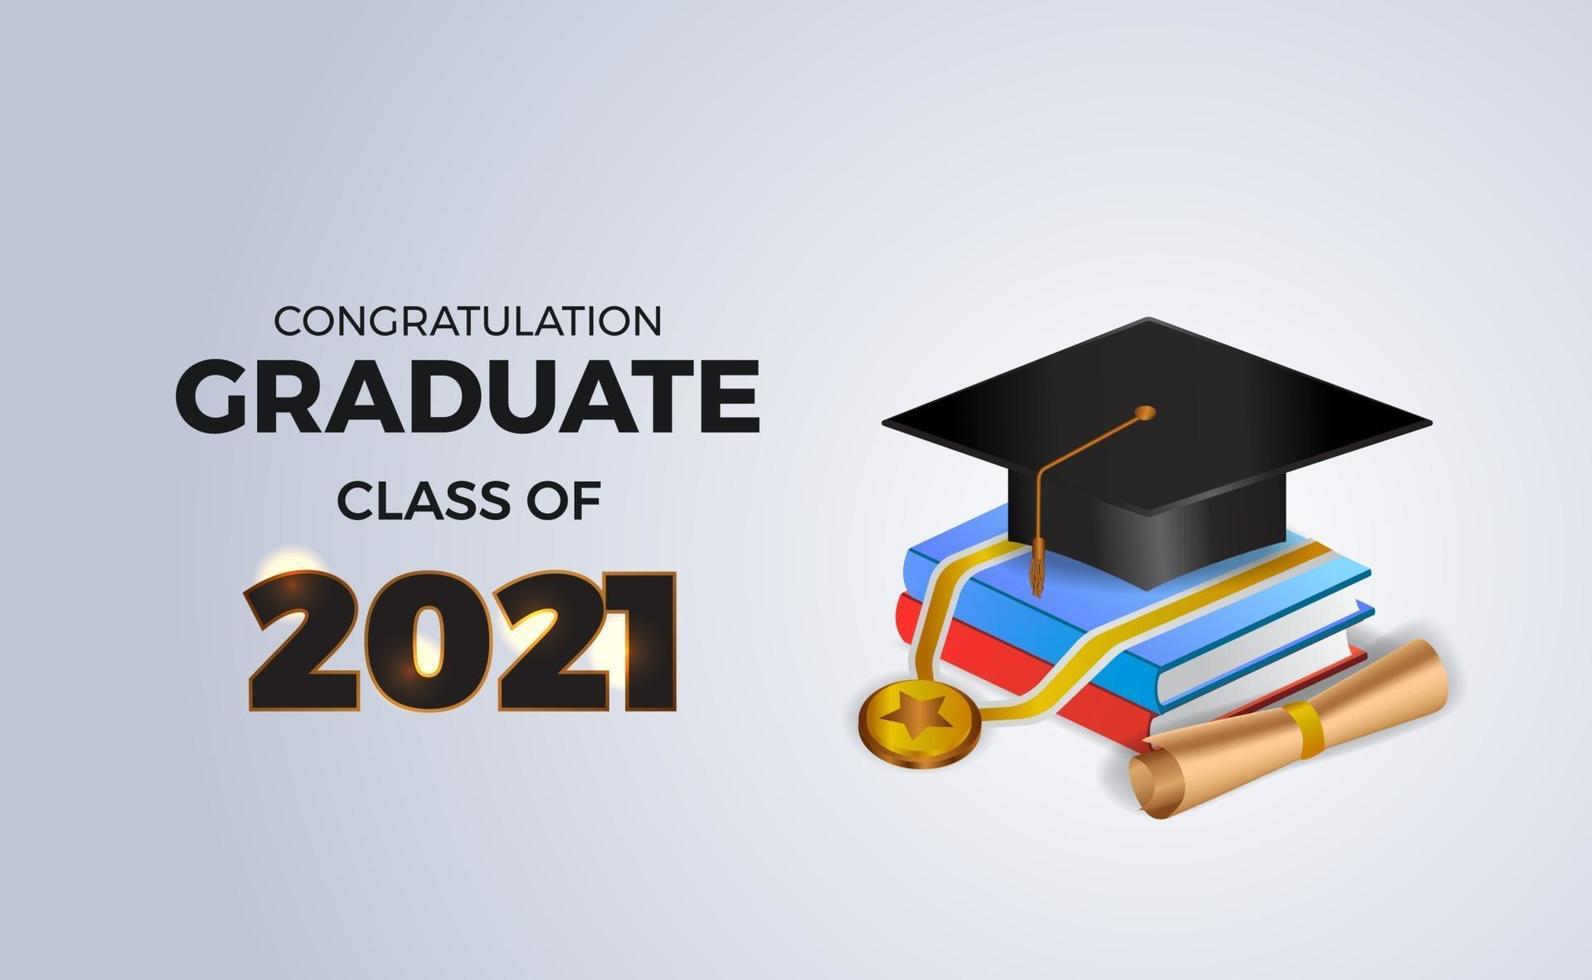 Felicitaciones a la clase de posgrado de 2021 con un libro isométrico en 3D y un gorro de graduación y una medalla. vector